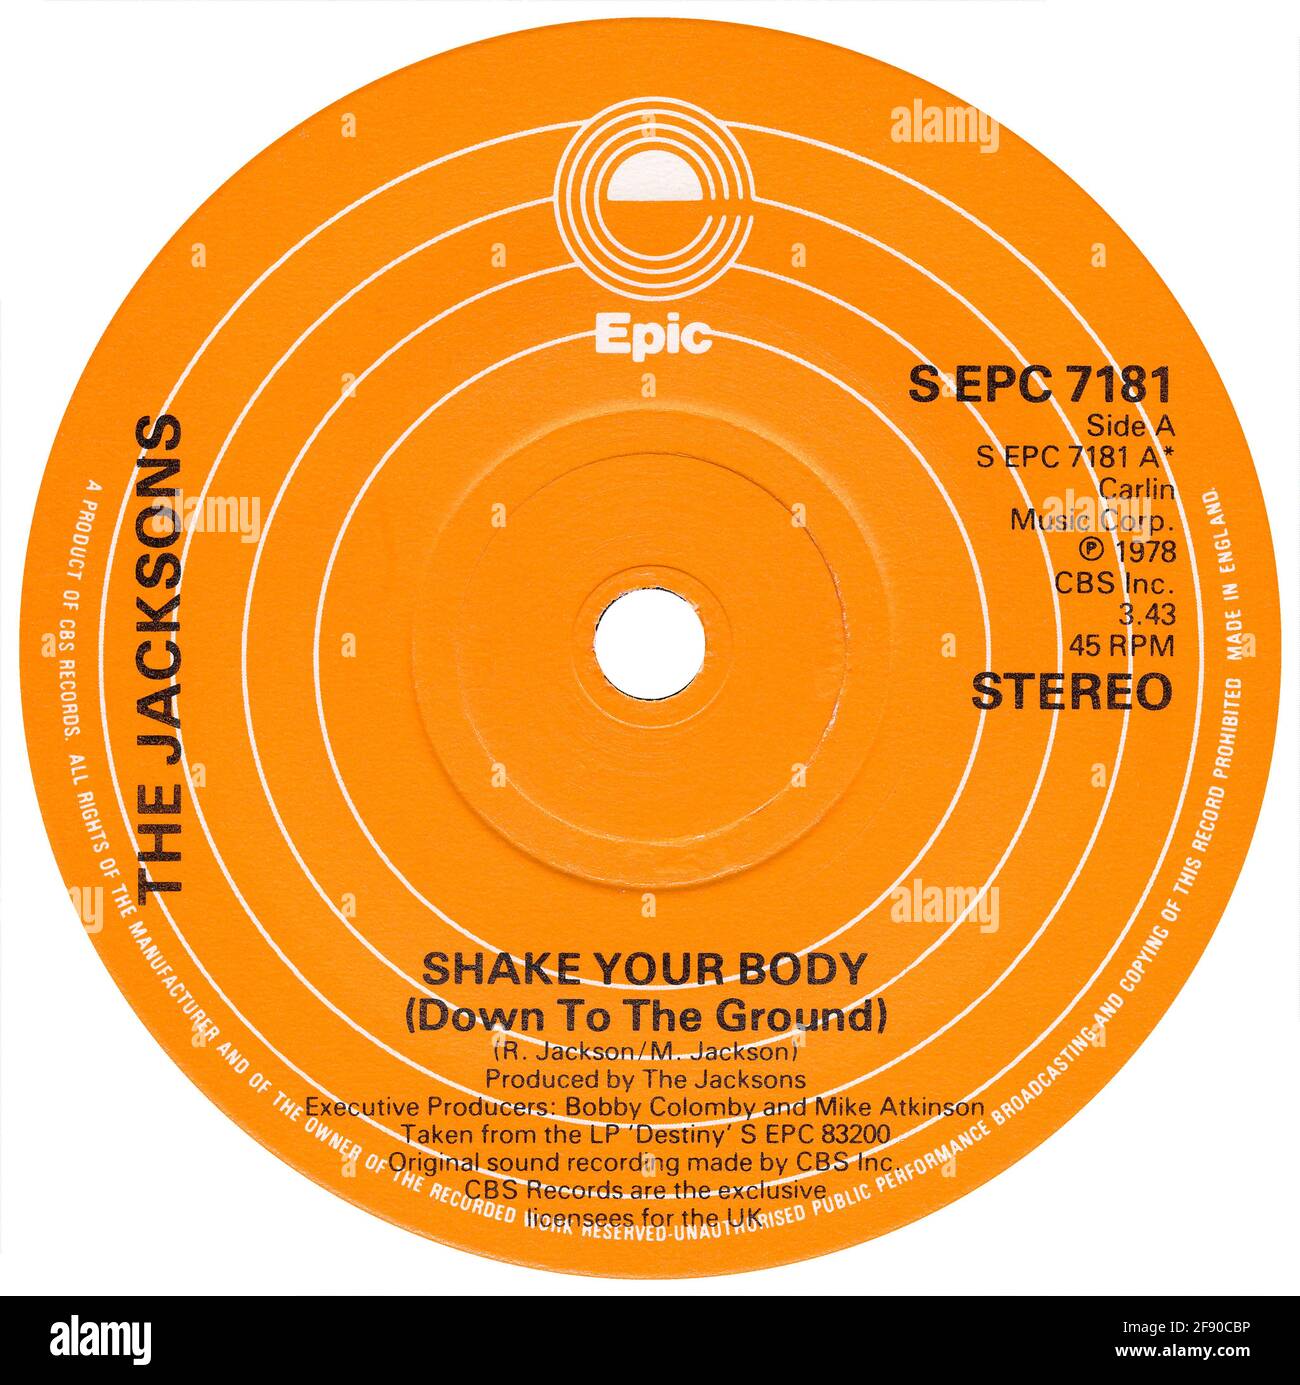 UK 45 rpm 7' Single von Shake Your Body (Down to the Ground) von The Jacksons auf dem Epic Label von 1979. Geschrieben von Randy und Michael Jackson und produziert von den Jacksons. Stockfoto